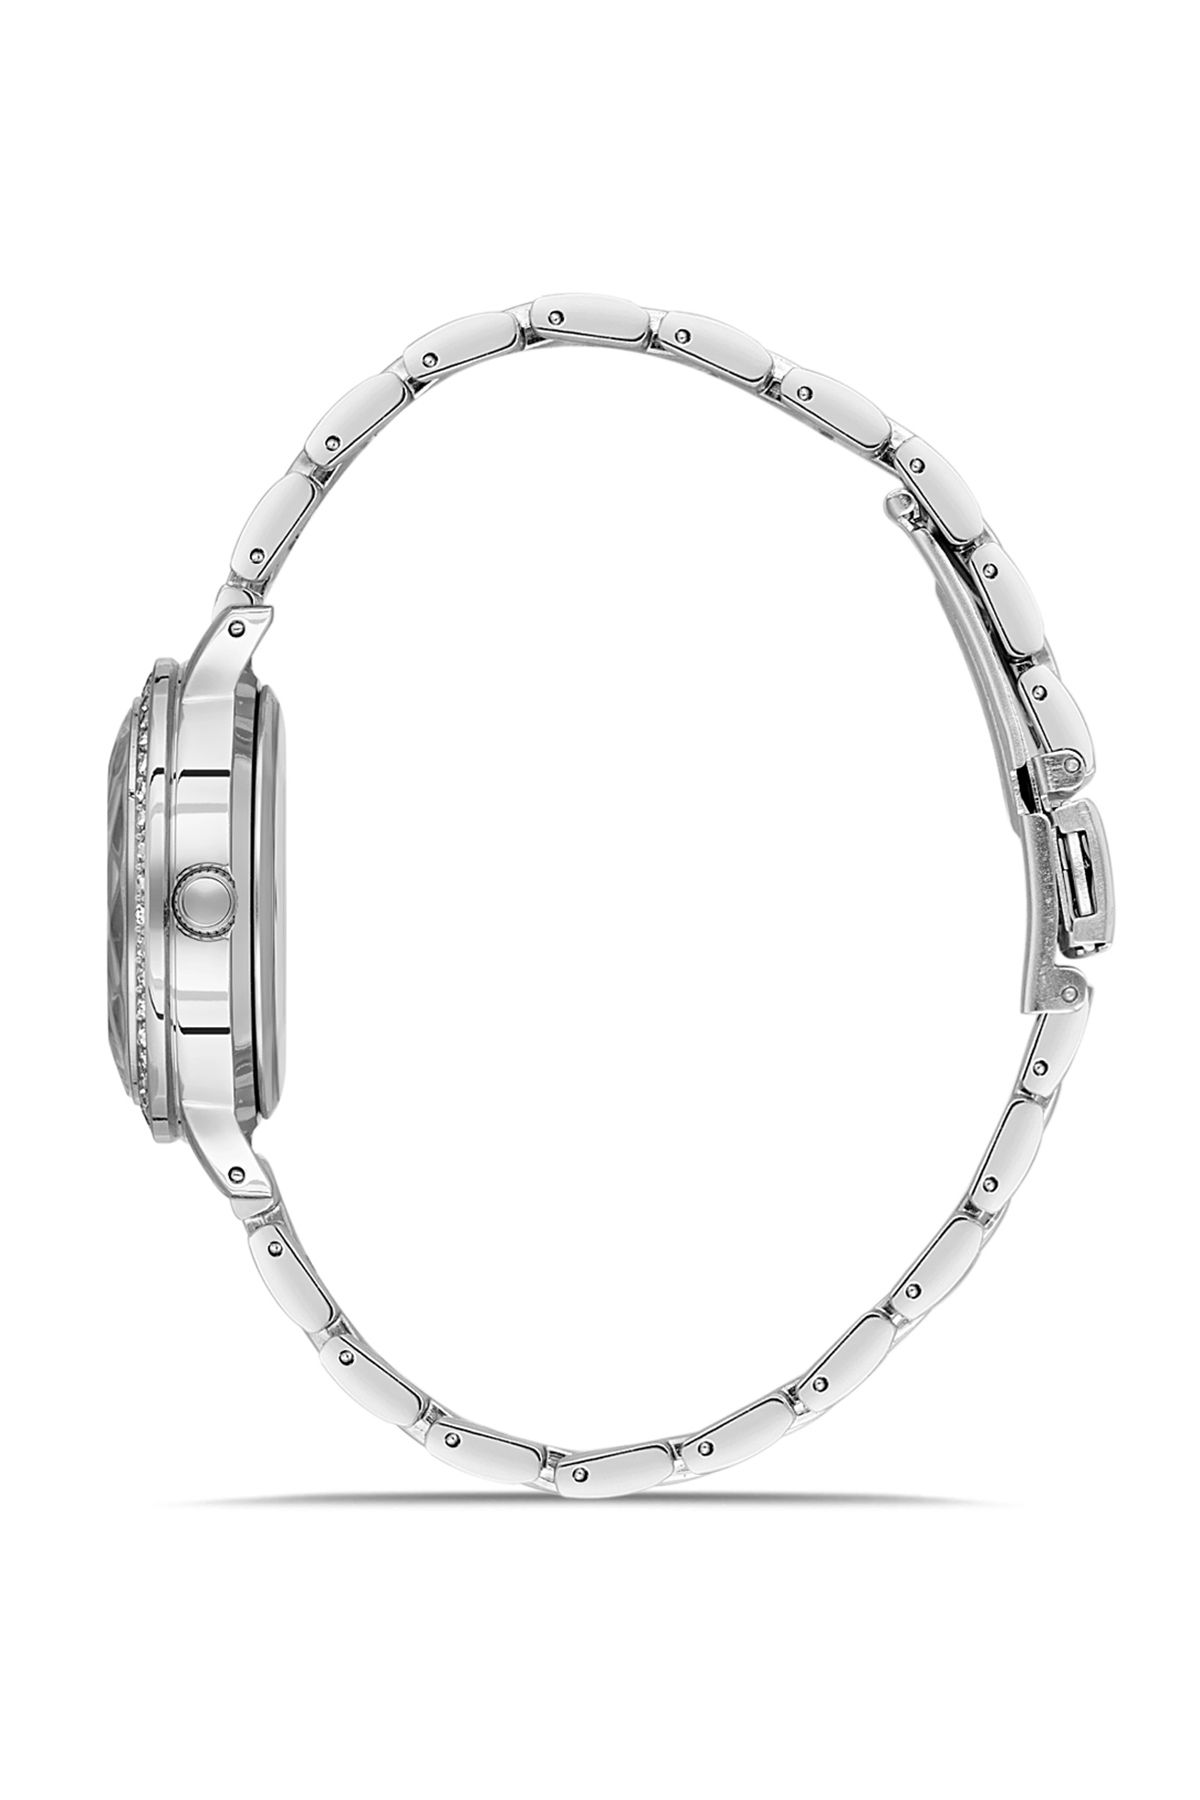 Kesme Cam Tek Sıra Lüx Taşlı Kadın Kol Saati Parfüm Hediyelik Kombin Set Gümüş-Lacivert Renk ST-2095S4